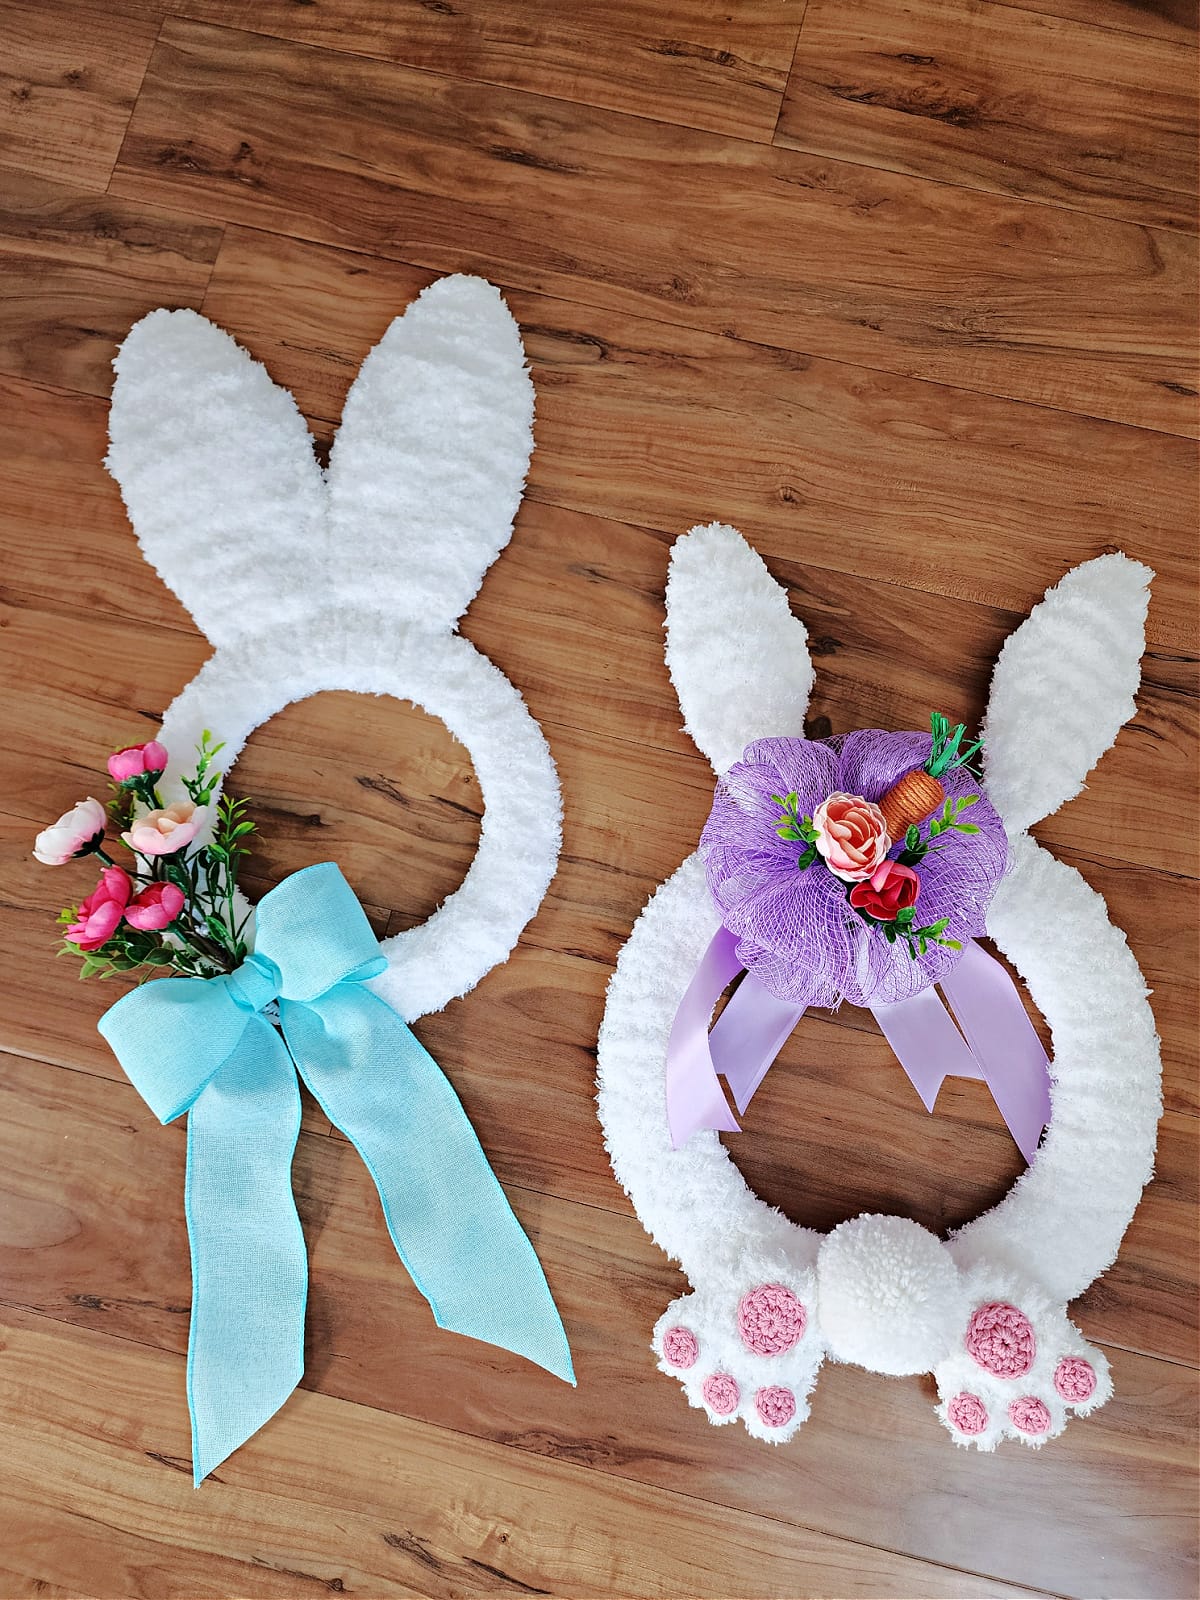 Two embellished crochet bunny wreaths.